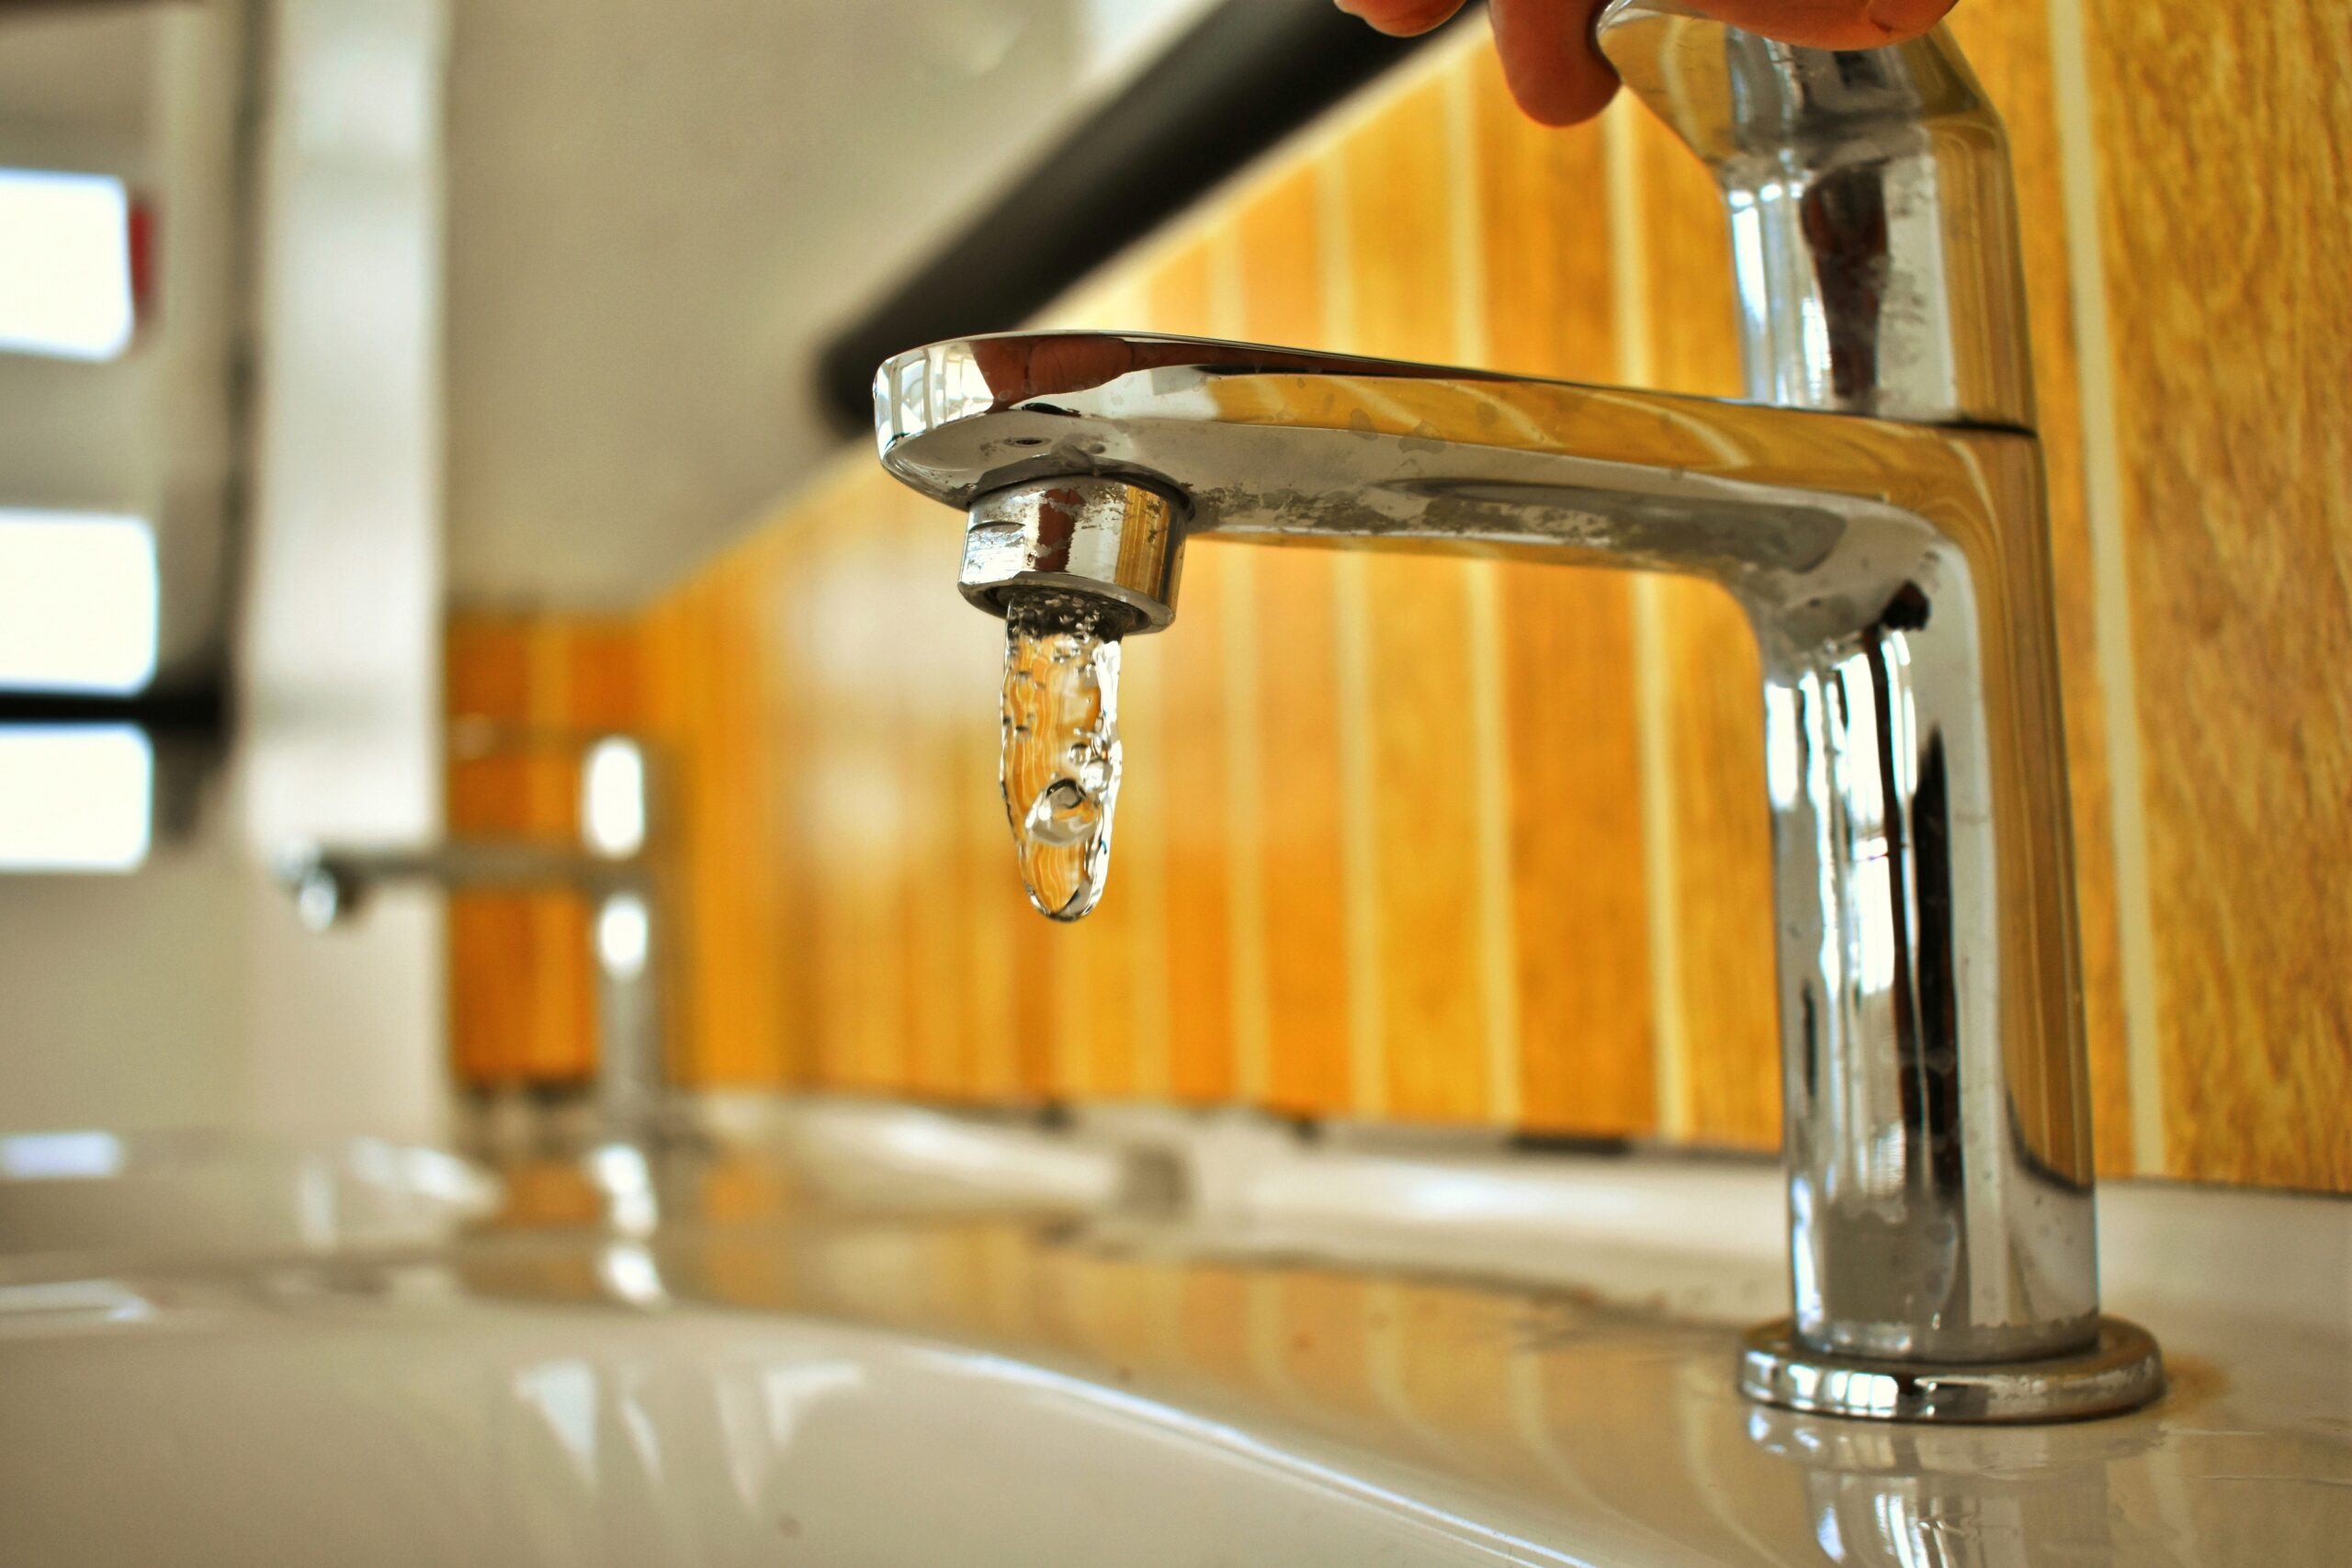 Live blog: No tap water in Waadhoeke